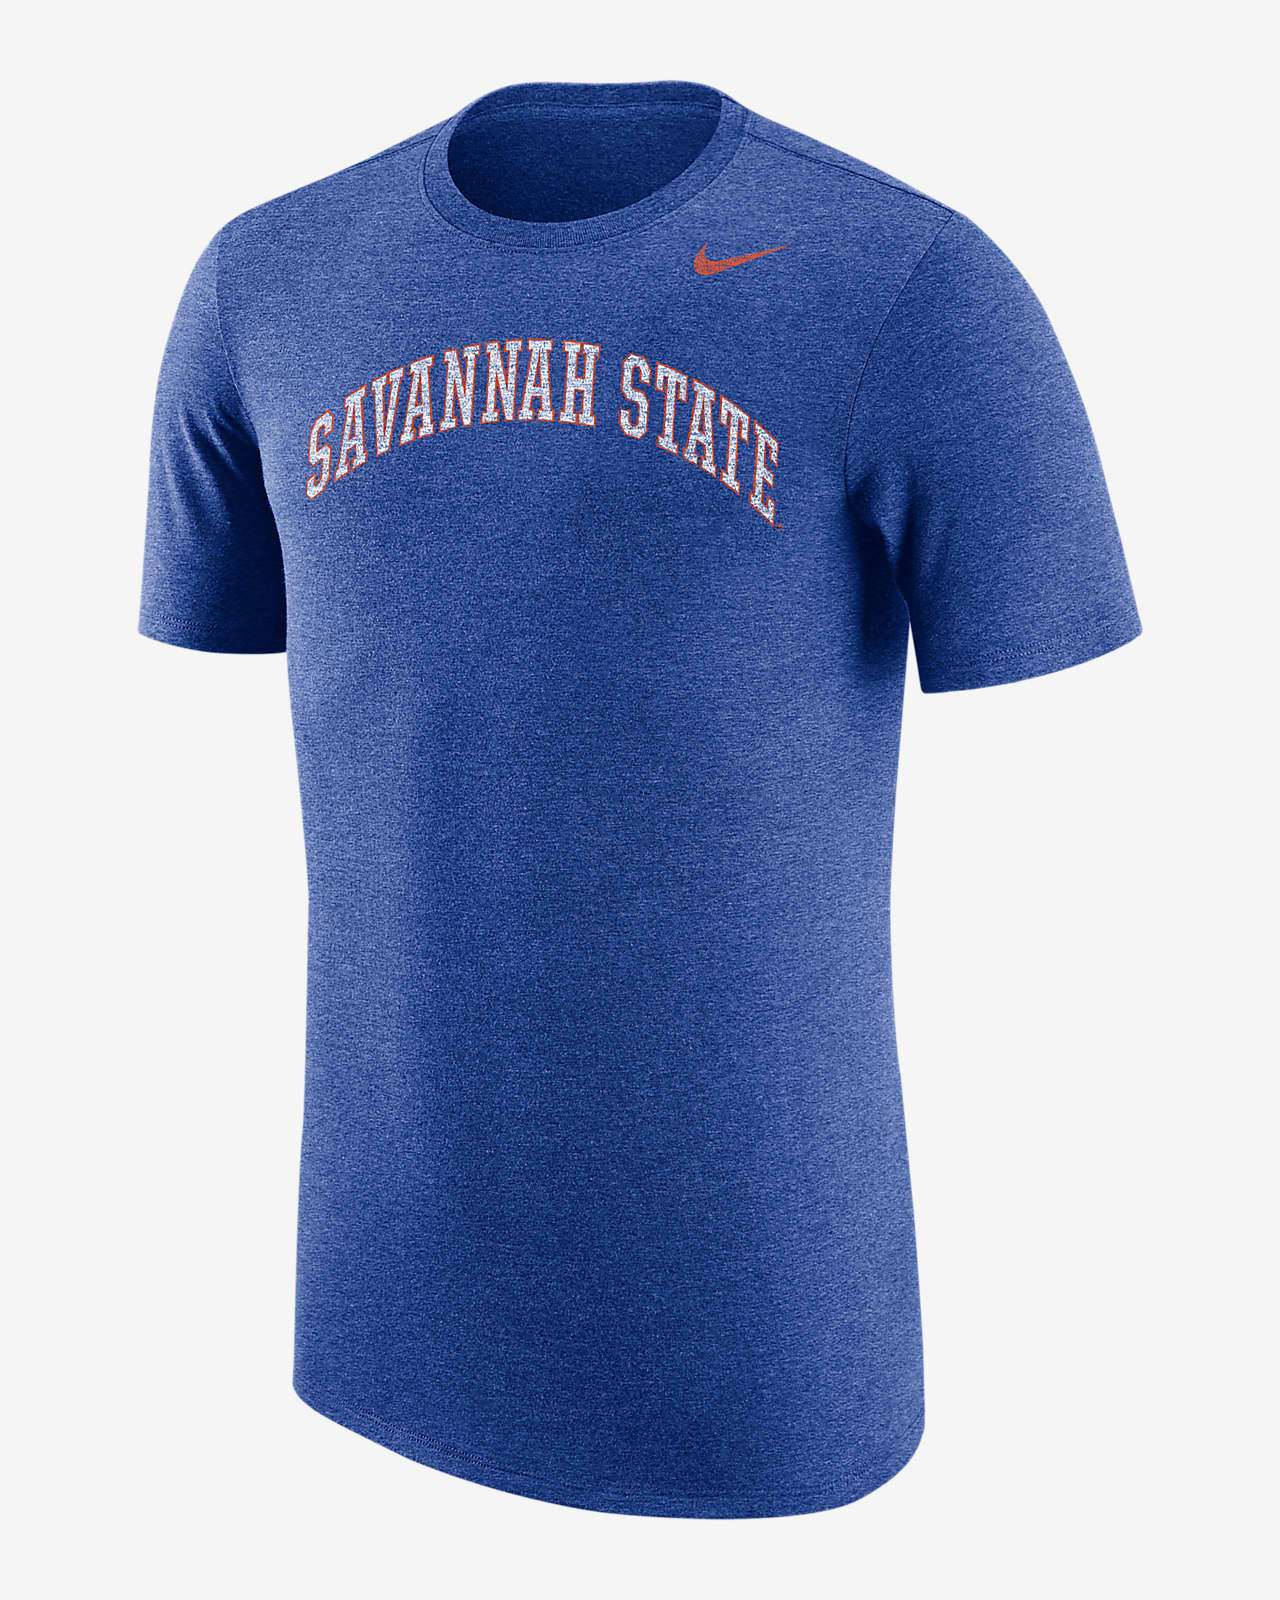 Nike College (Savannah State) Men's T-Shirt